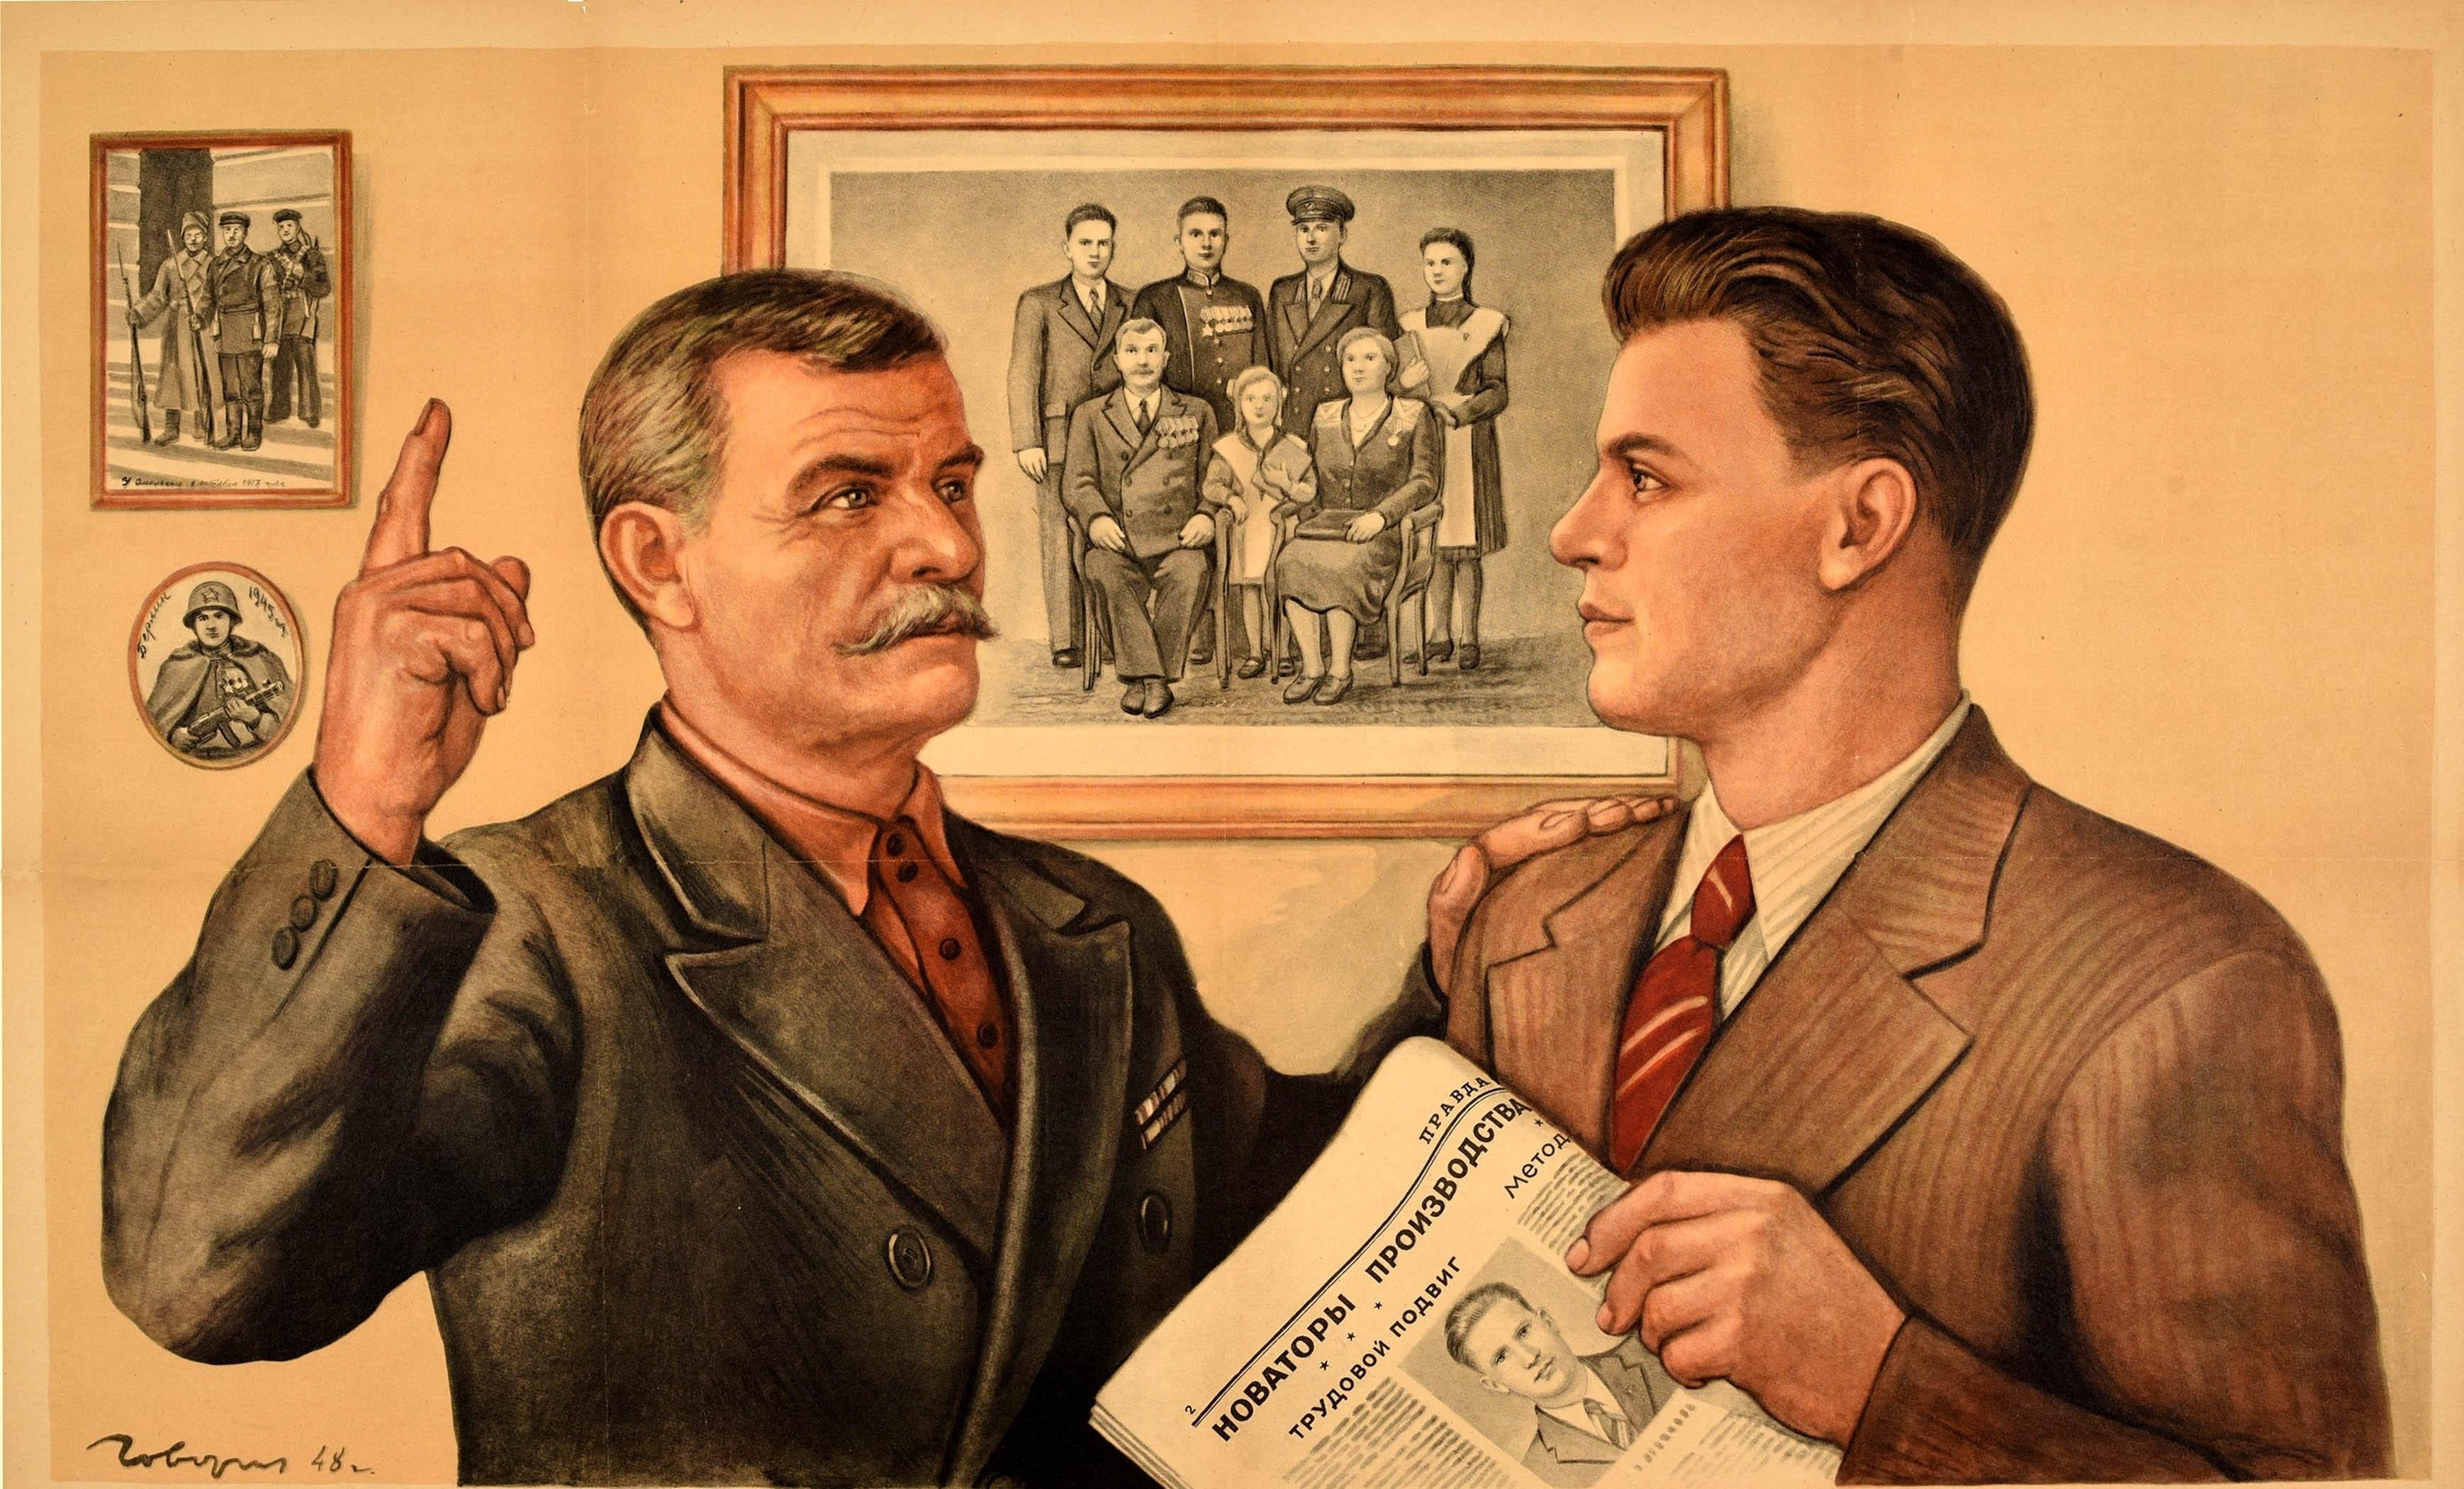 Affiche originale de propagande soviétique vintage - Treasure the Honour of the Family ! - reprenant la citation ci-dessous, montrant un homme âgé montrant trois photographies sur un mur d'hommes en uniforme militaire, d'un soldat et d'une famille